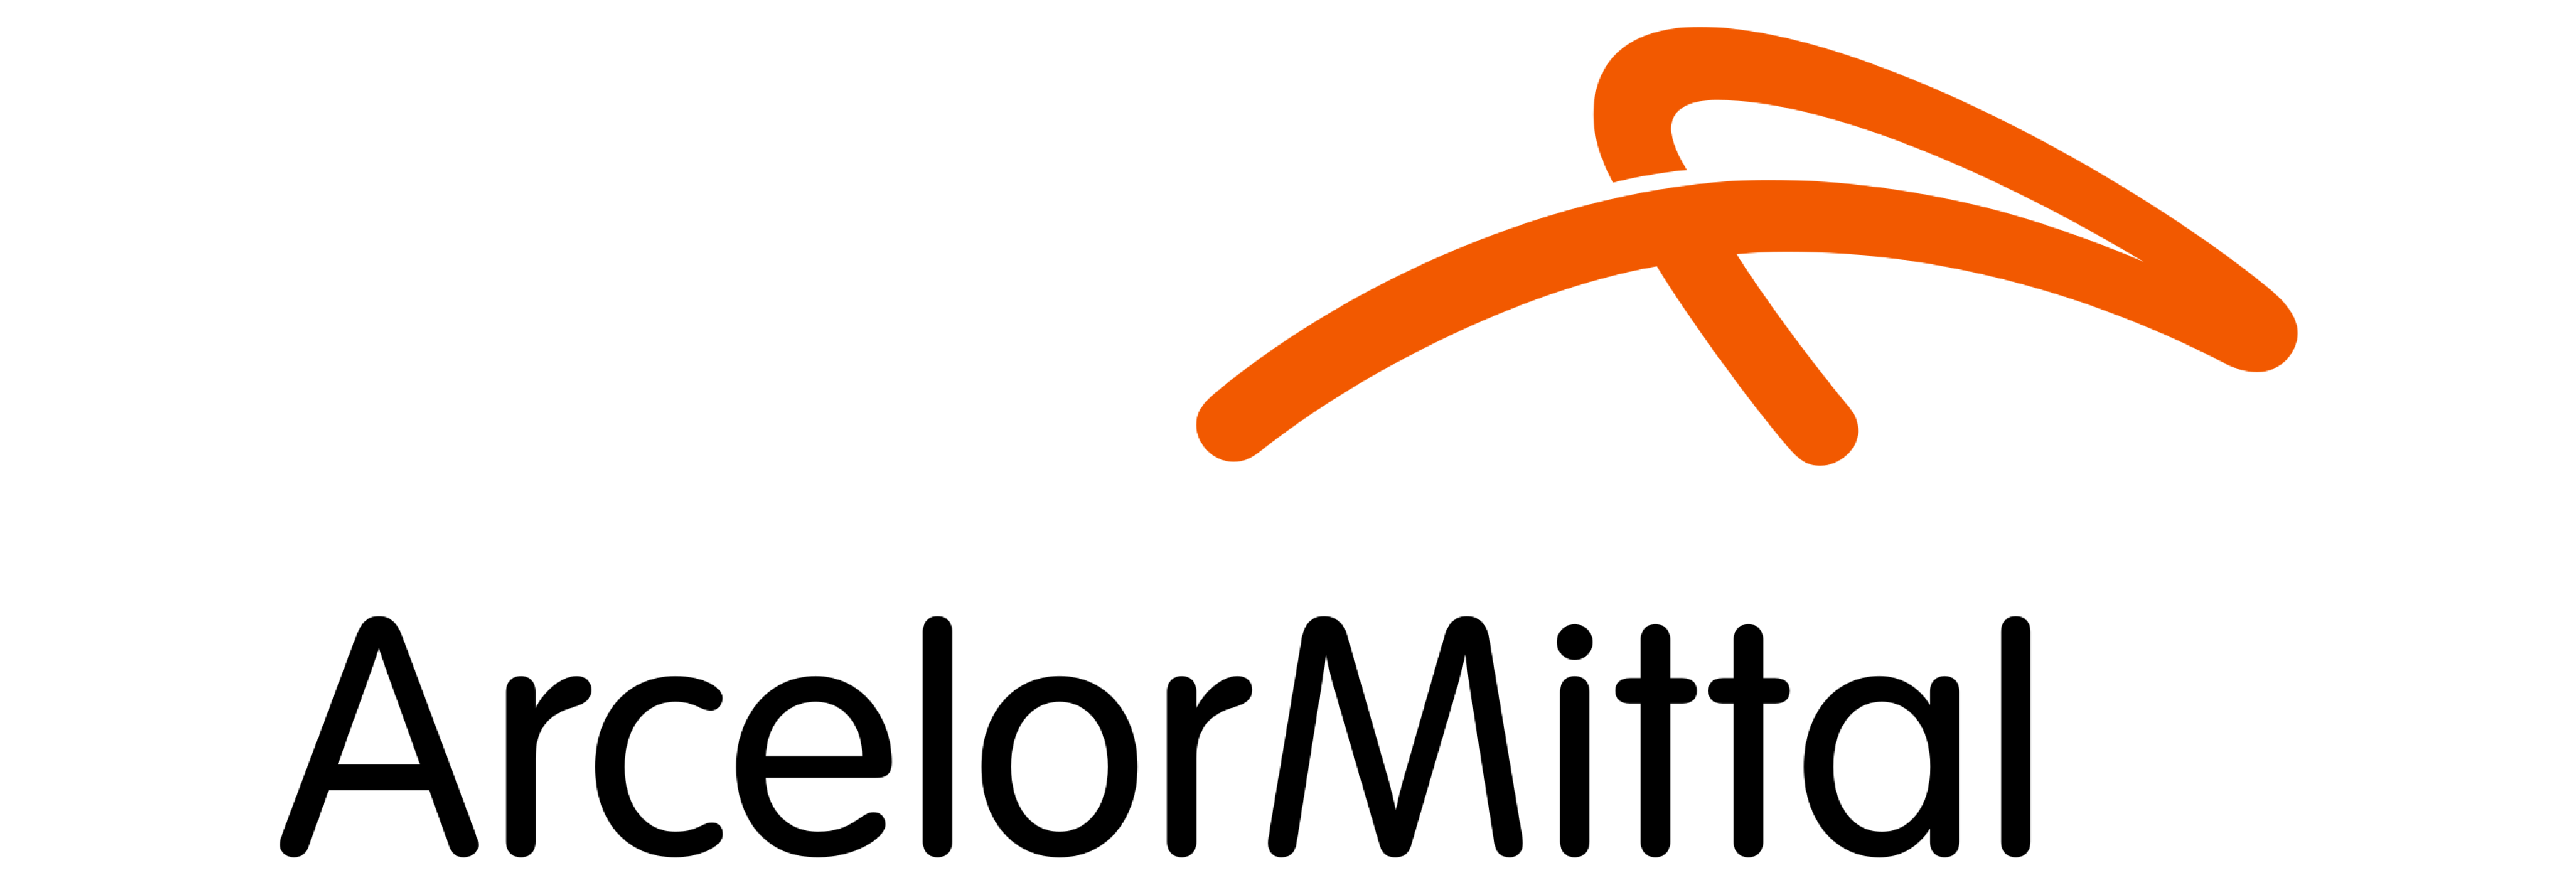 ArcelorMittal logo partner of beSteel.